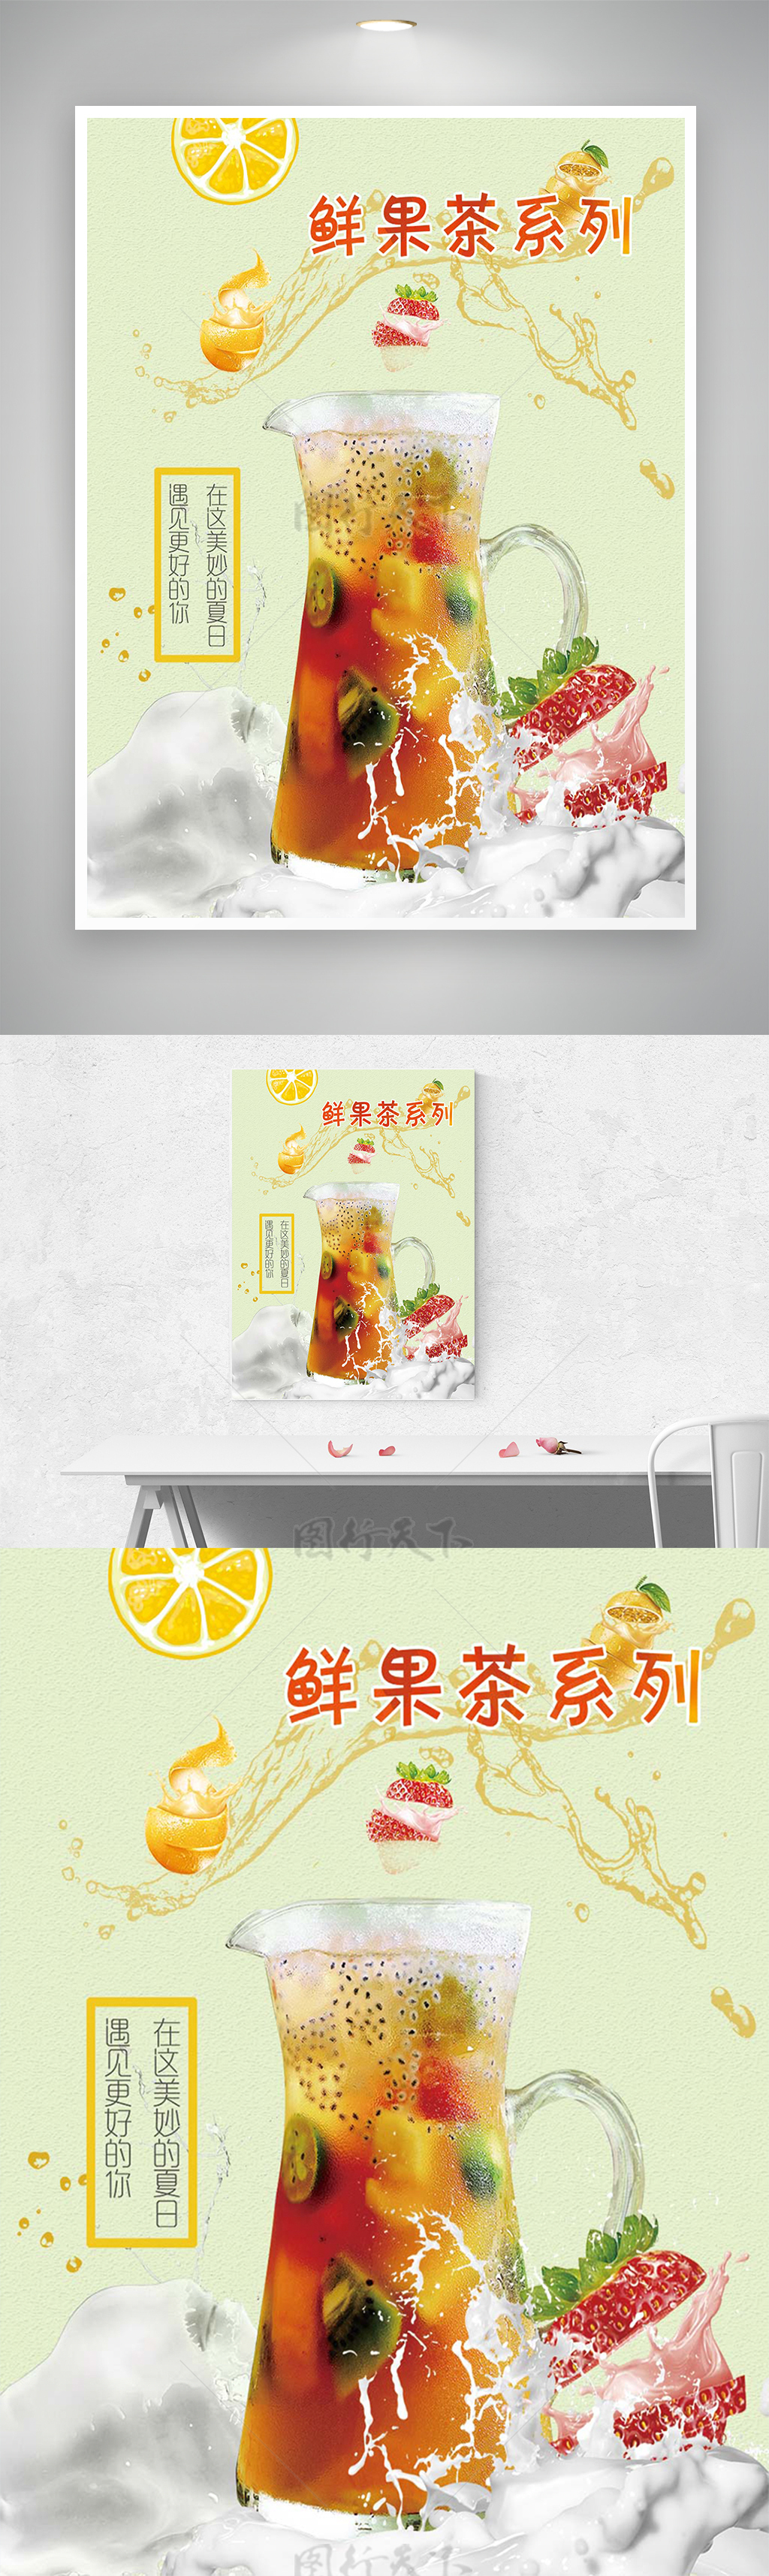 鲜果水果茶系列饮料宣传海报